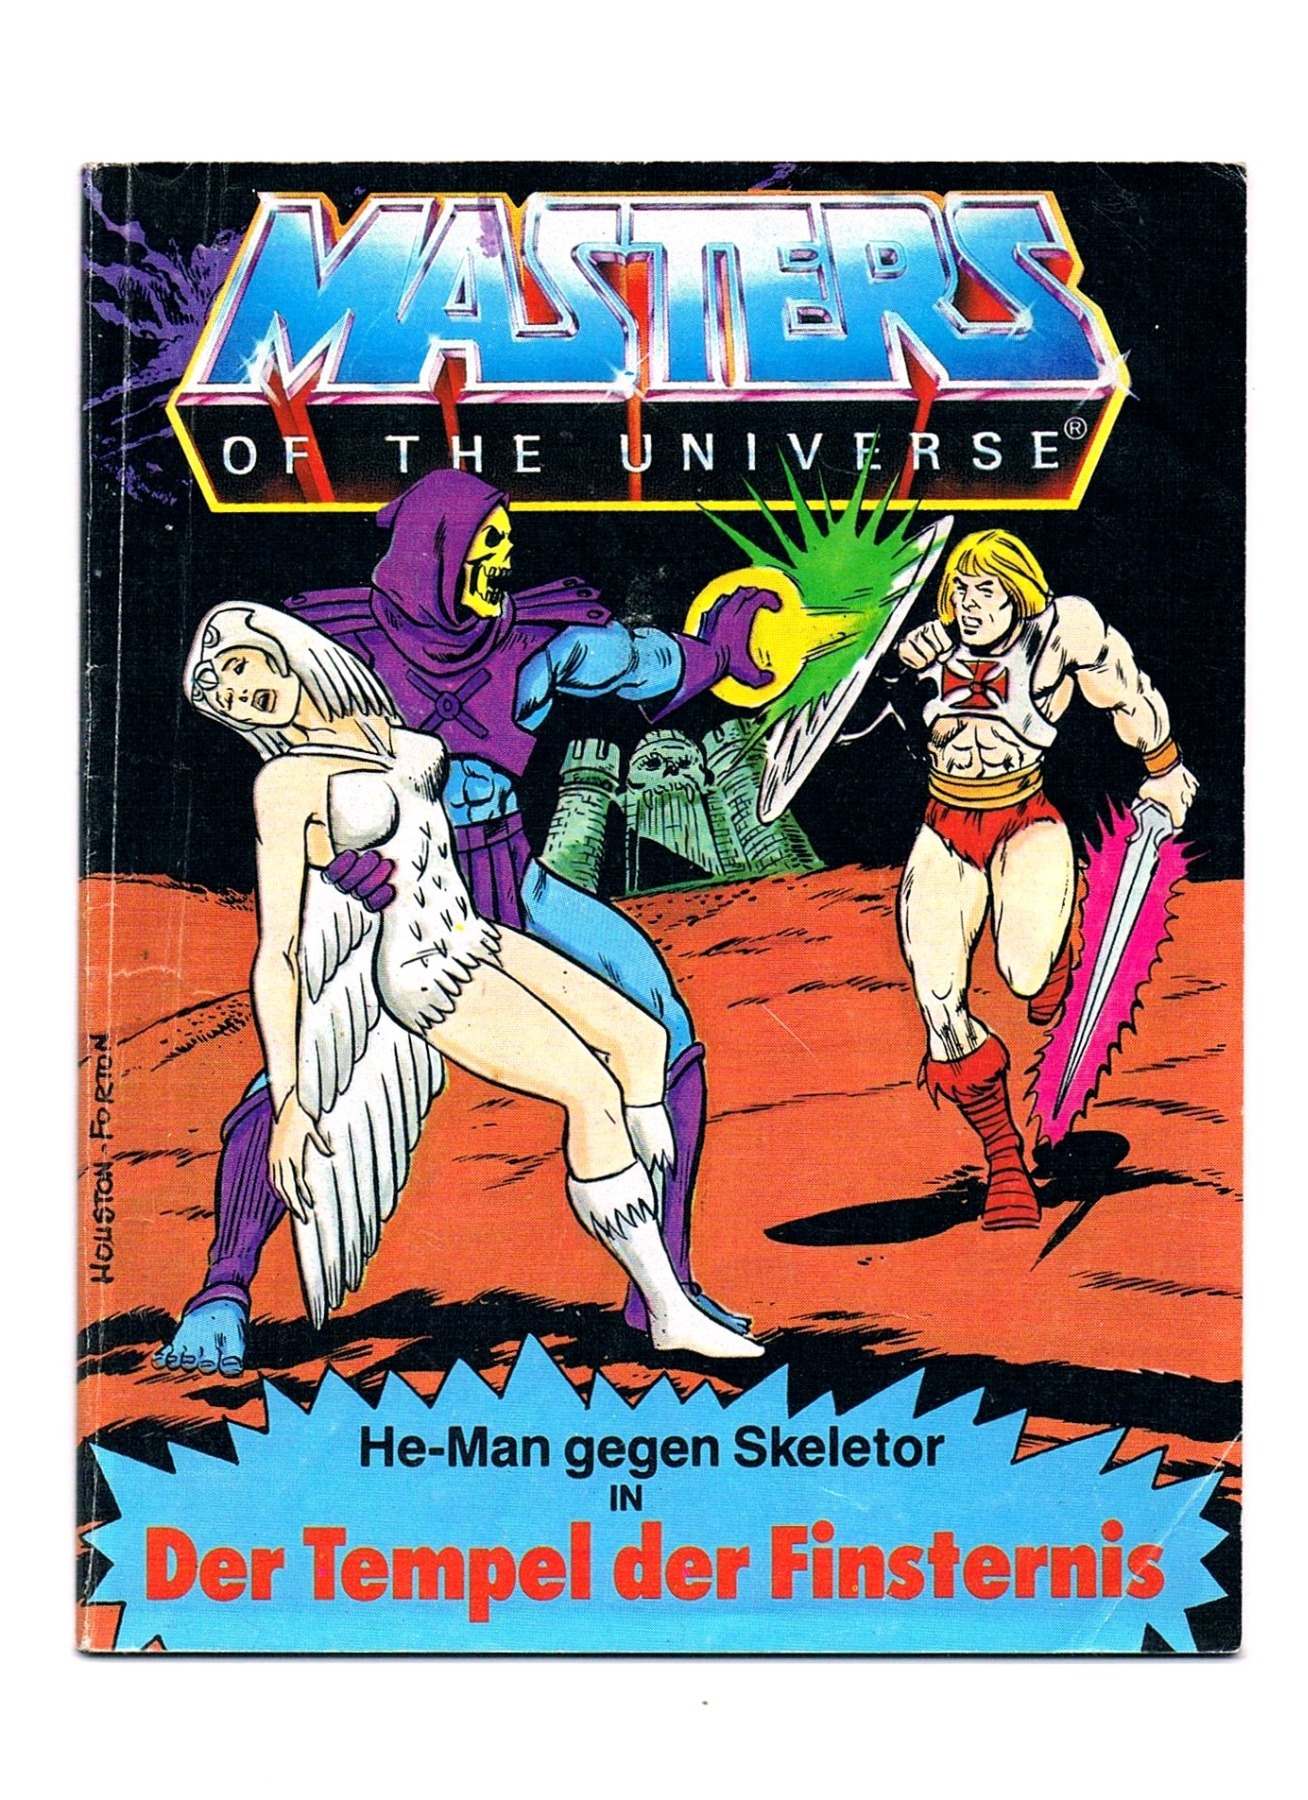 He-Man gegen Skeletor in Der Tempel der Finsternis - Mini Comic